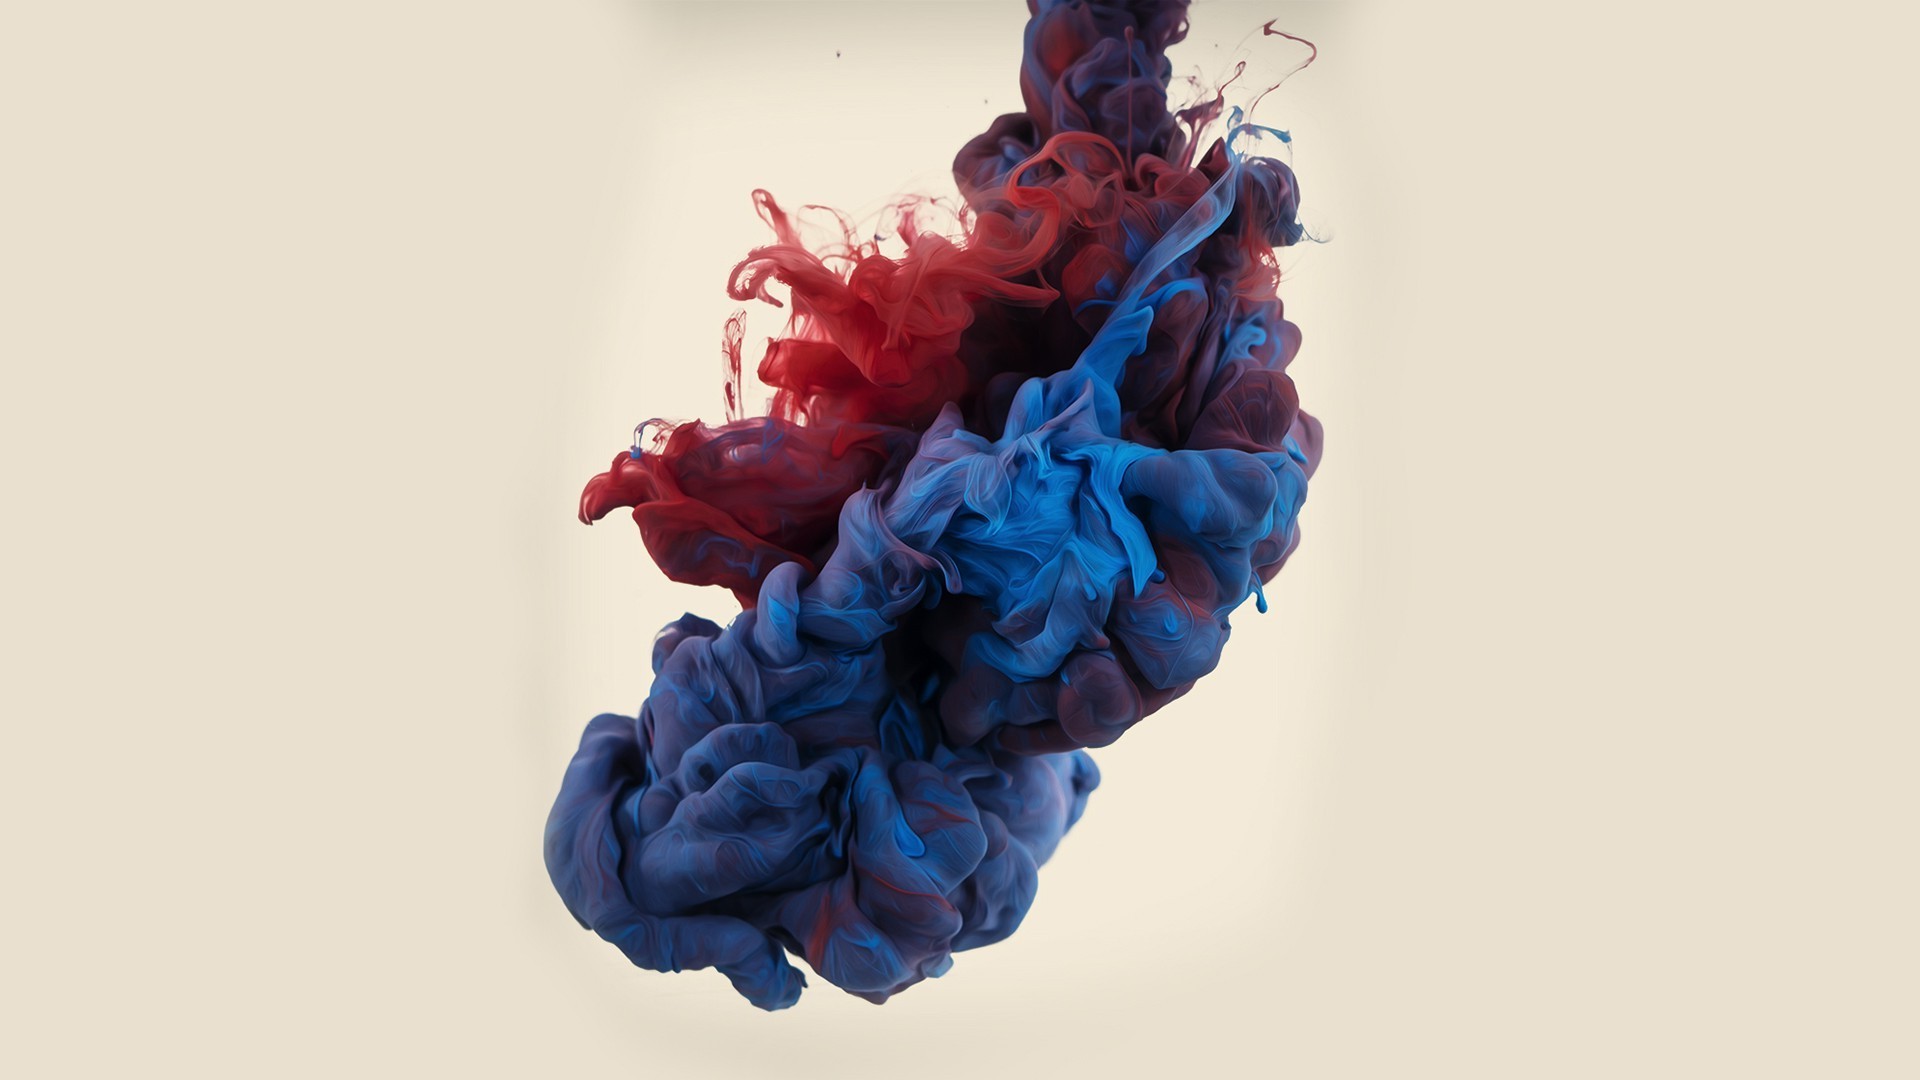 ink live wallpaper,blue,red,wool,cobalt blue,textile